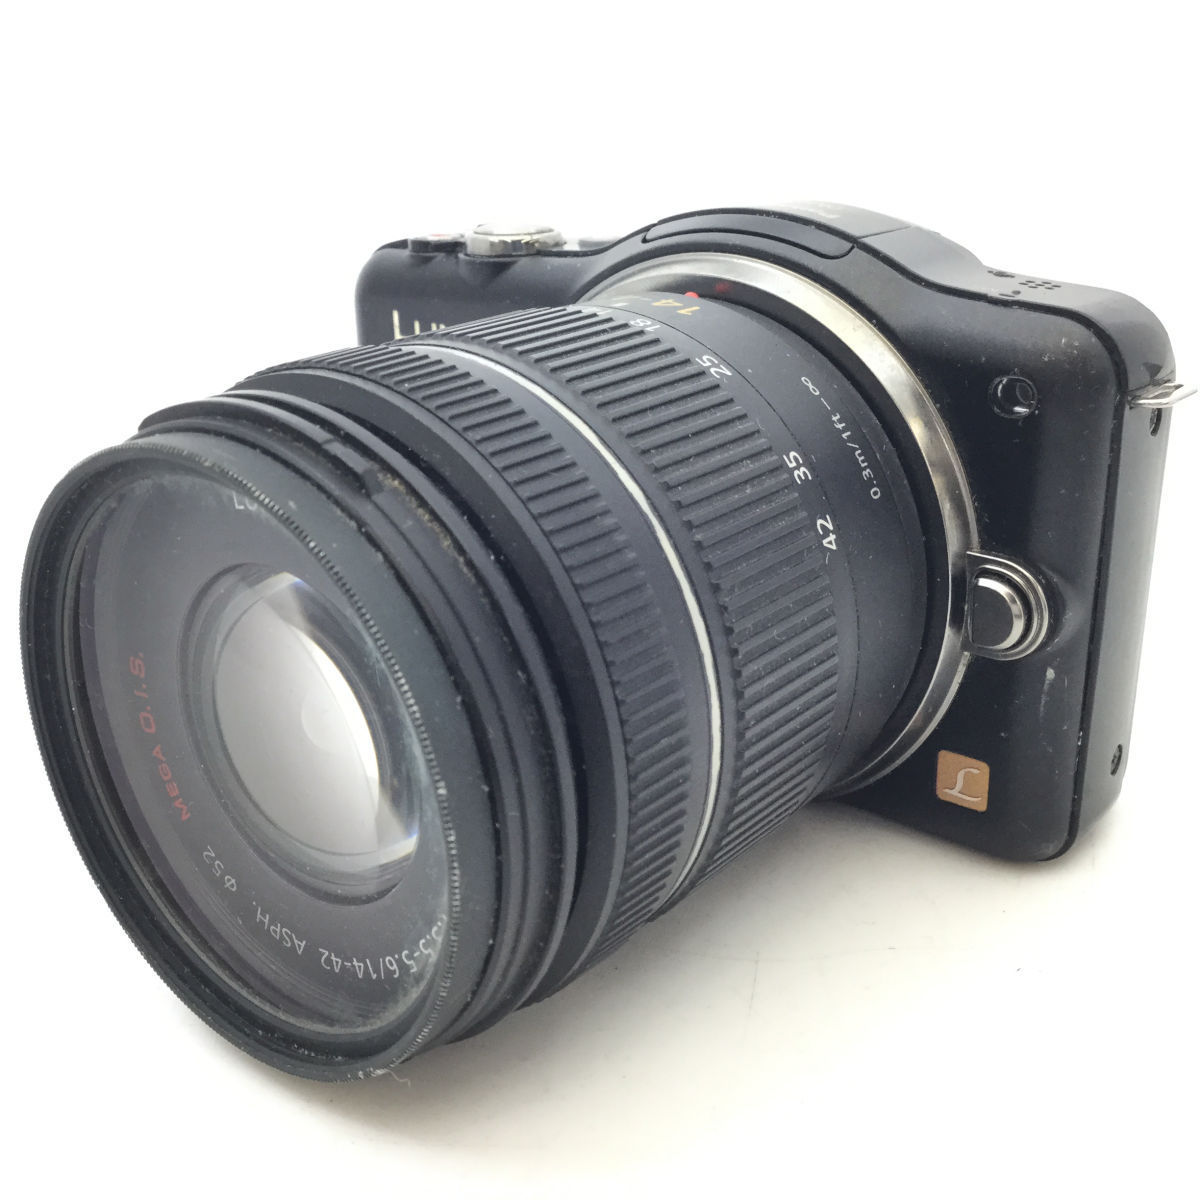 【買取実績】Panasonic ミラーレスカメラ Lumix GF3 Lumix G.VARIO 14-42mm f／3.5-5.6 | 法人対応の買取サービス 修理・販売の総合リユース